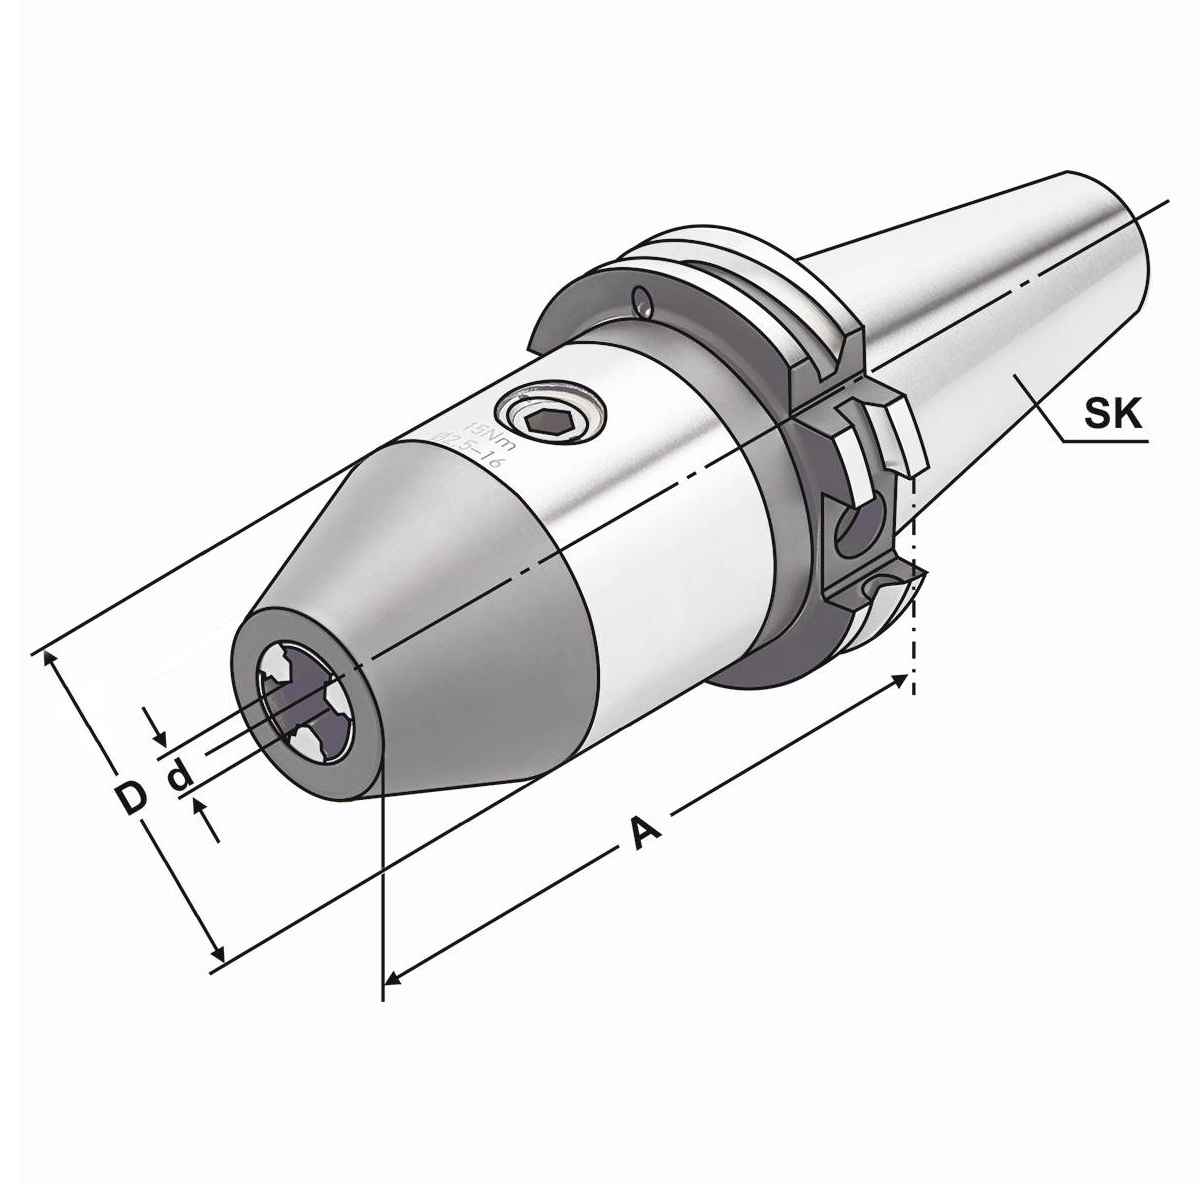 CNC-Bohrfutter SK 30-1/13-111 DIN 69871 AD